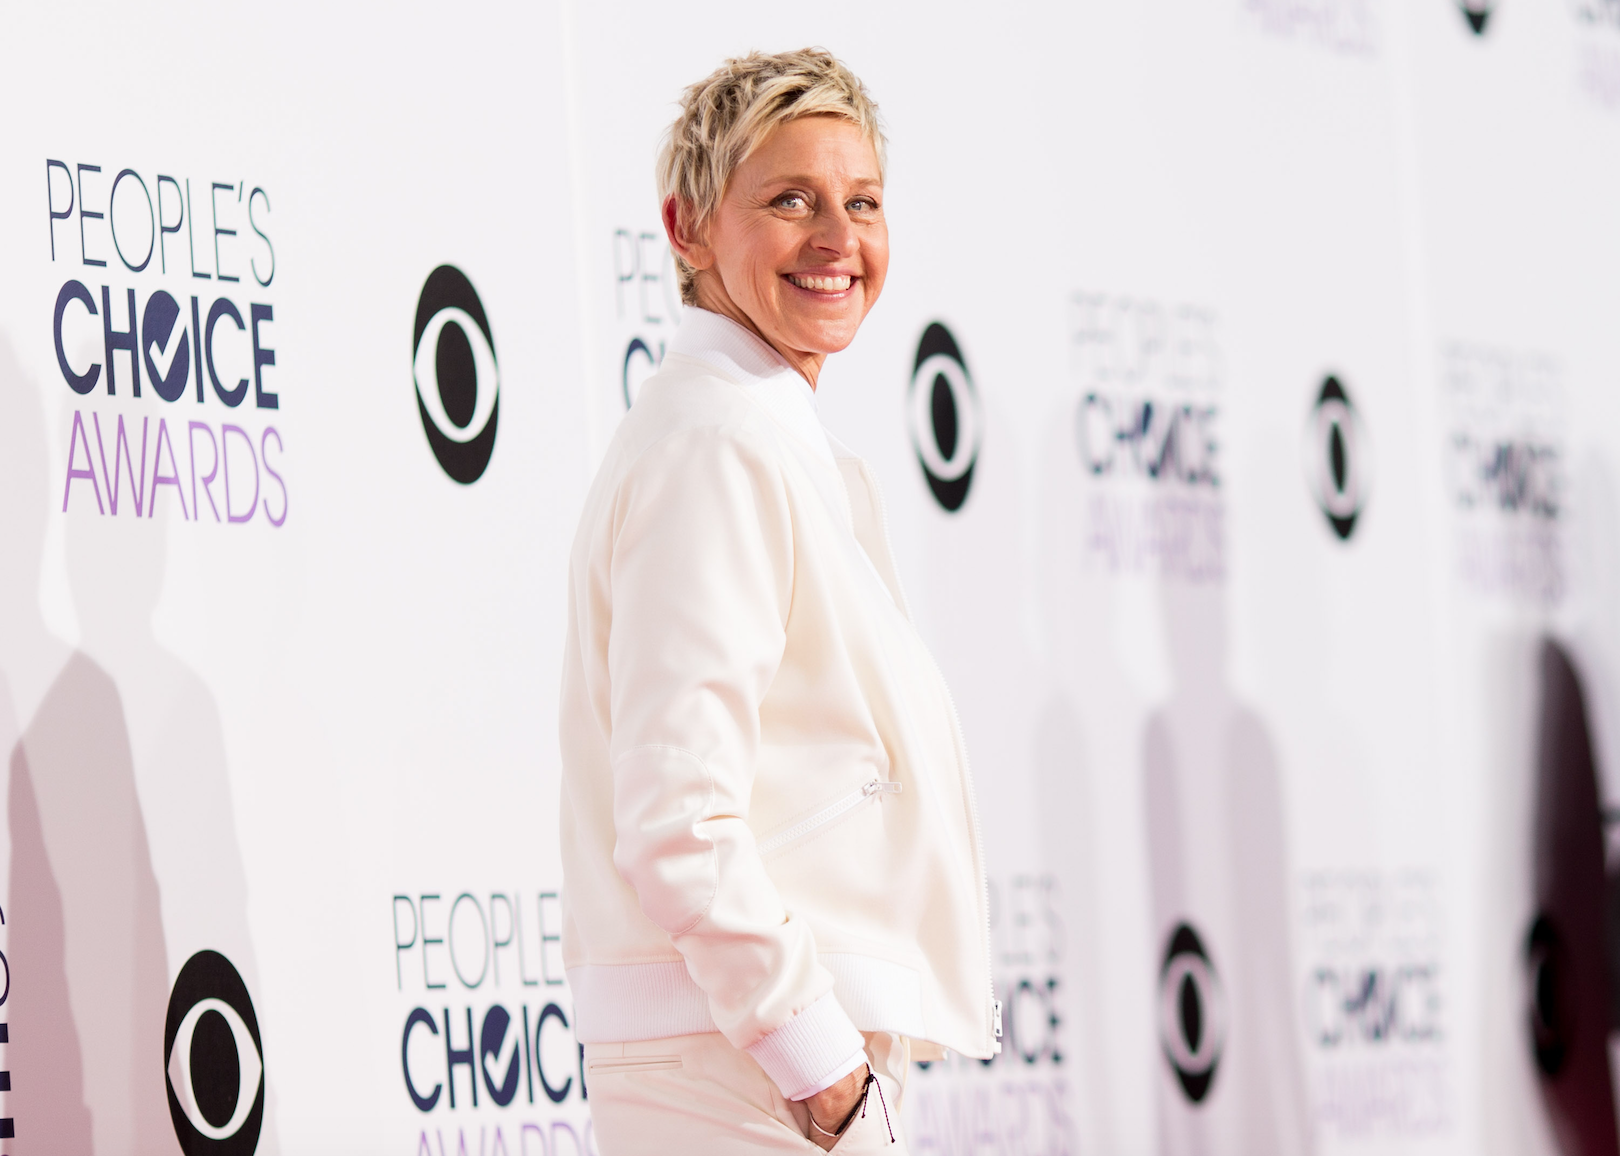 Ellen DeGeneres in all white posing for an event.